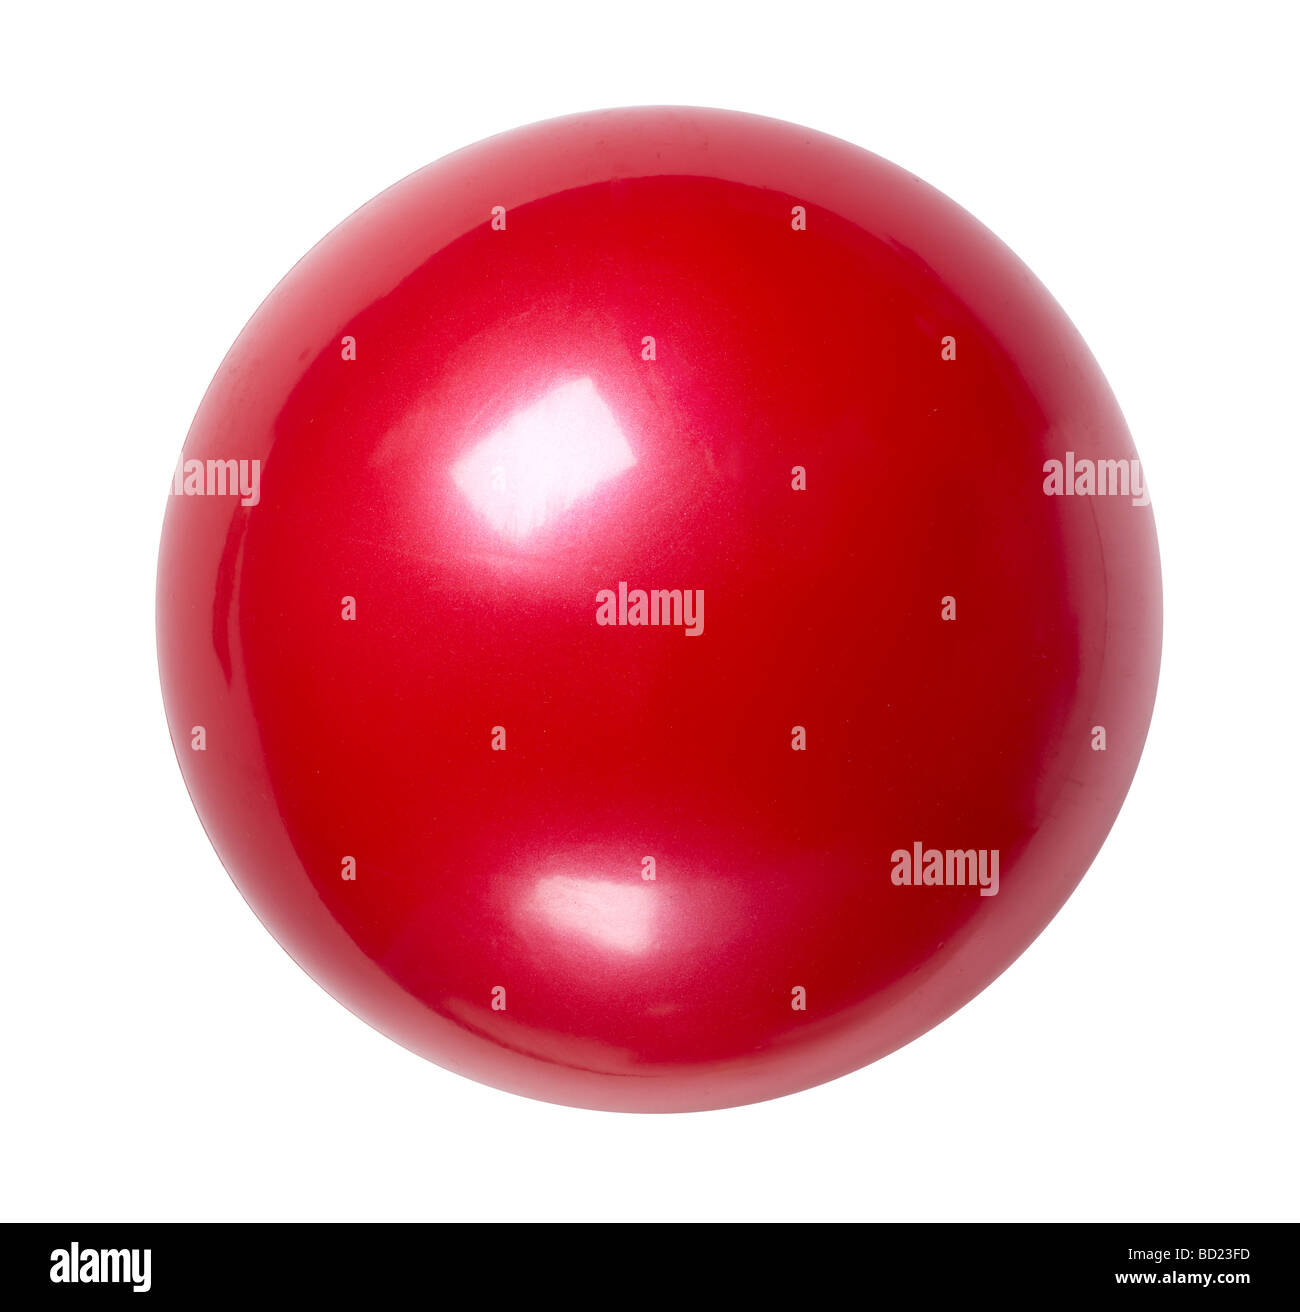 Palla rossa immagini e fotografie stock ad alta risoluzione - Alamy